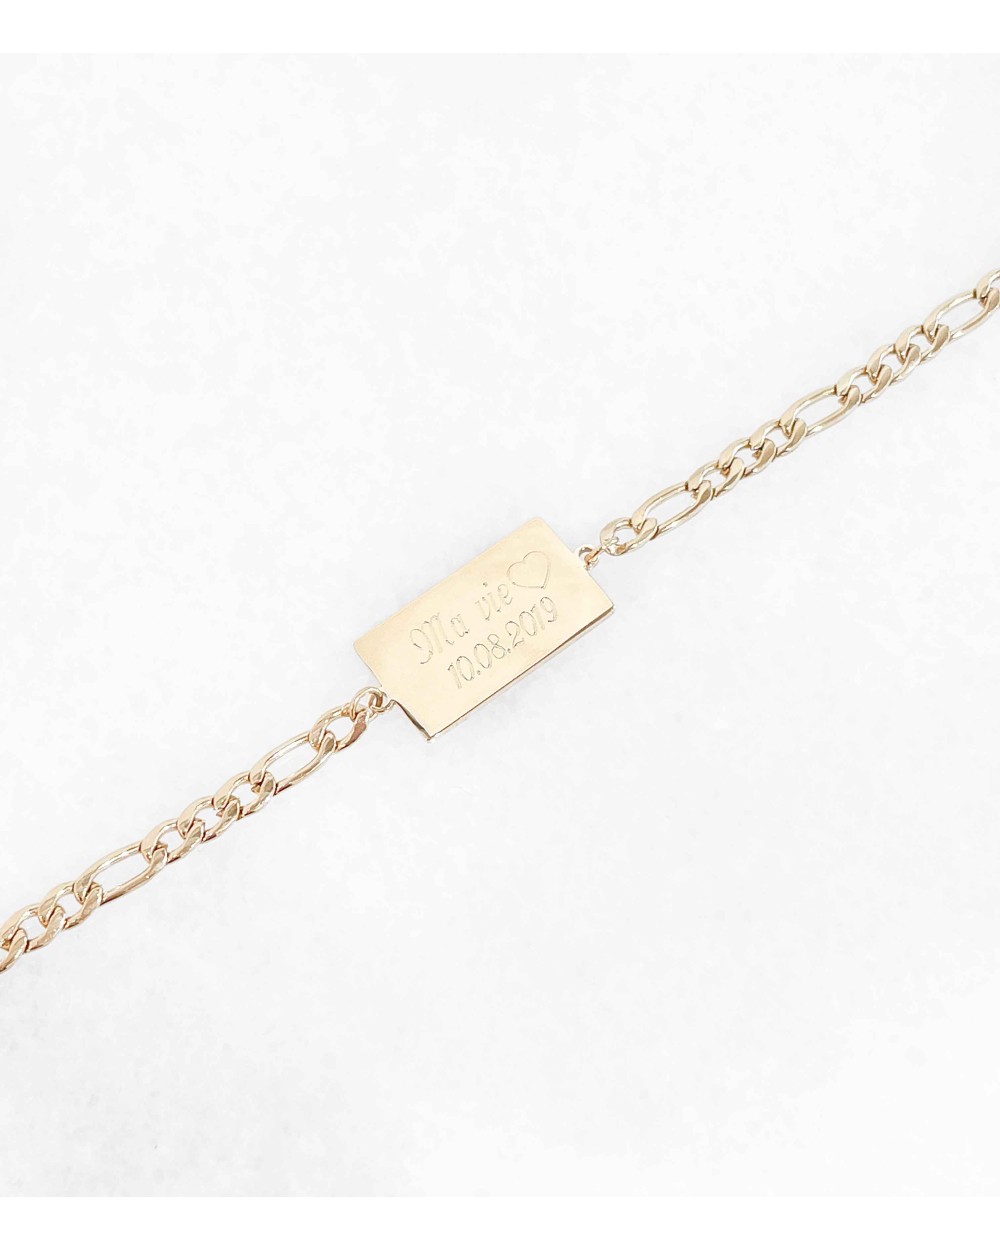 bracelet à personnaliser - gravure - paloma bijoux - acier chirurgical 316L - idée cadeau femme - personnalisation - été 2022